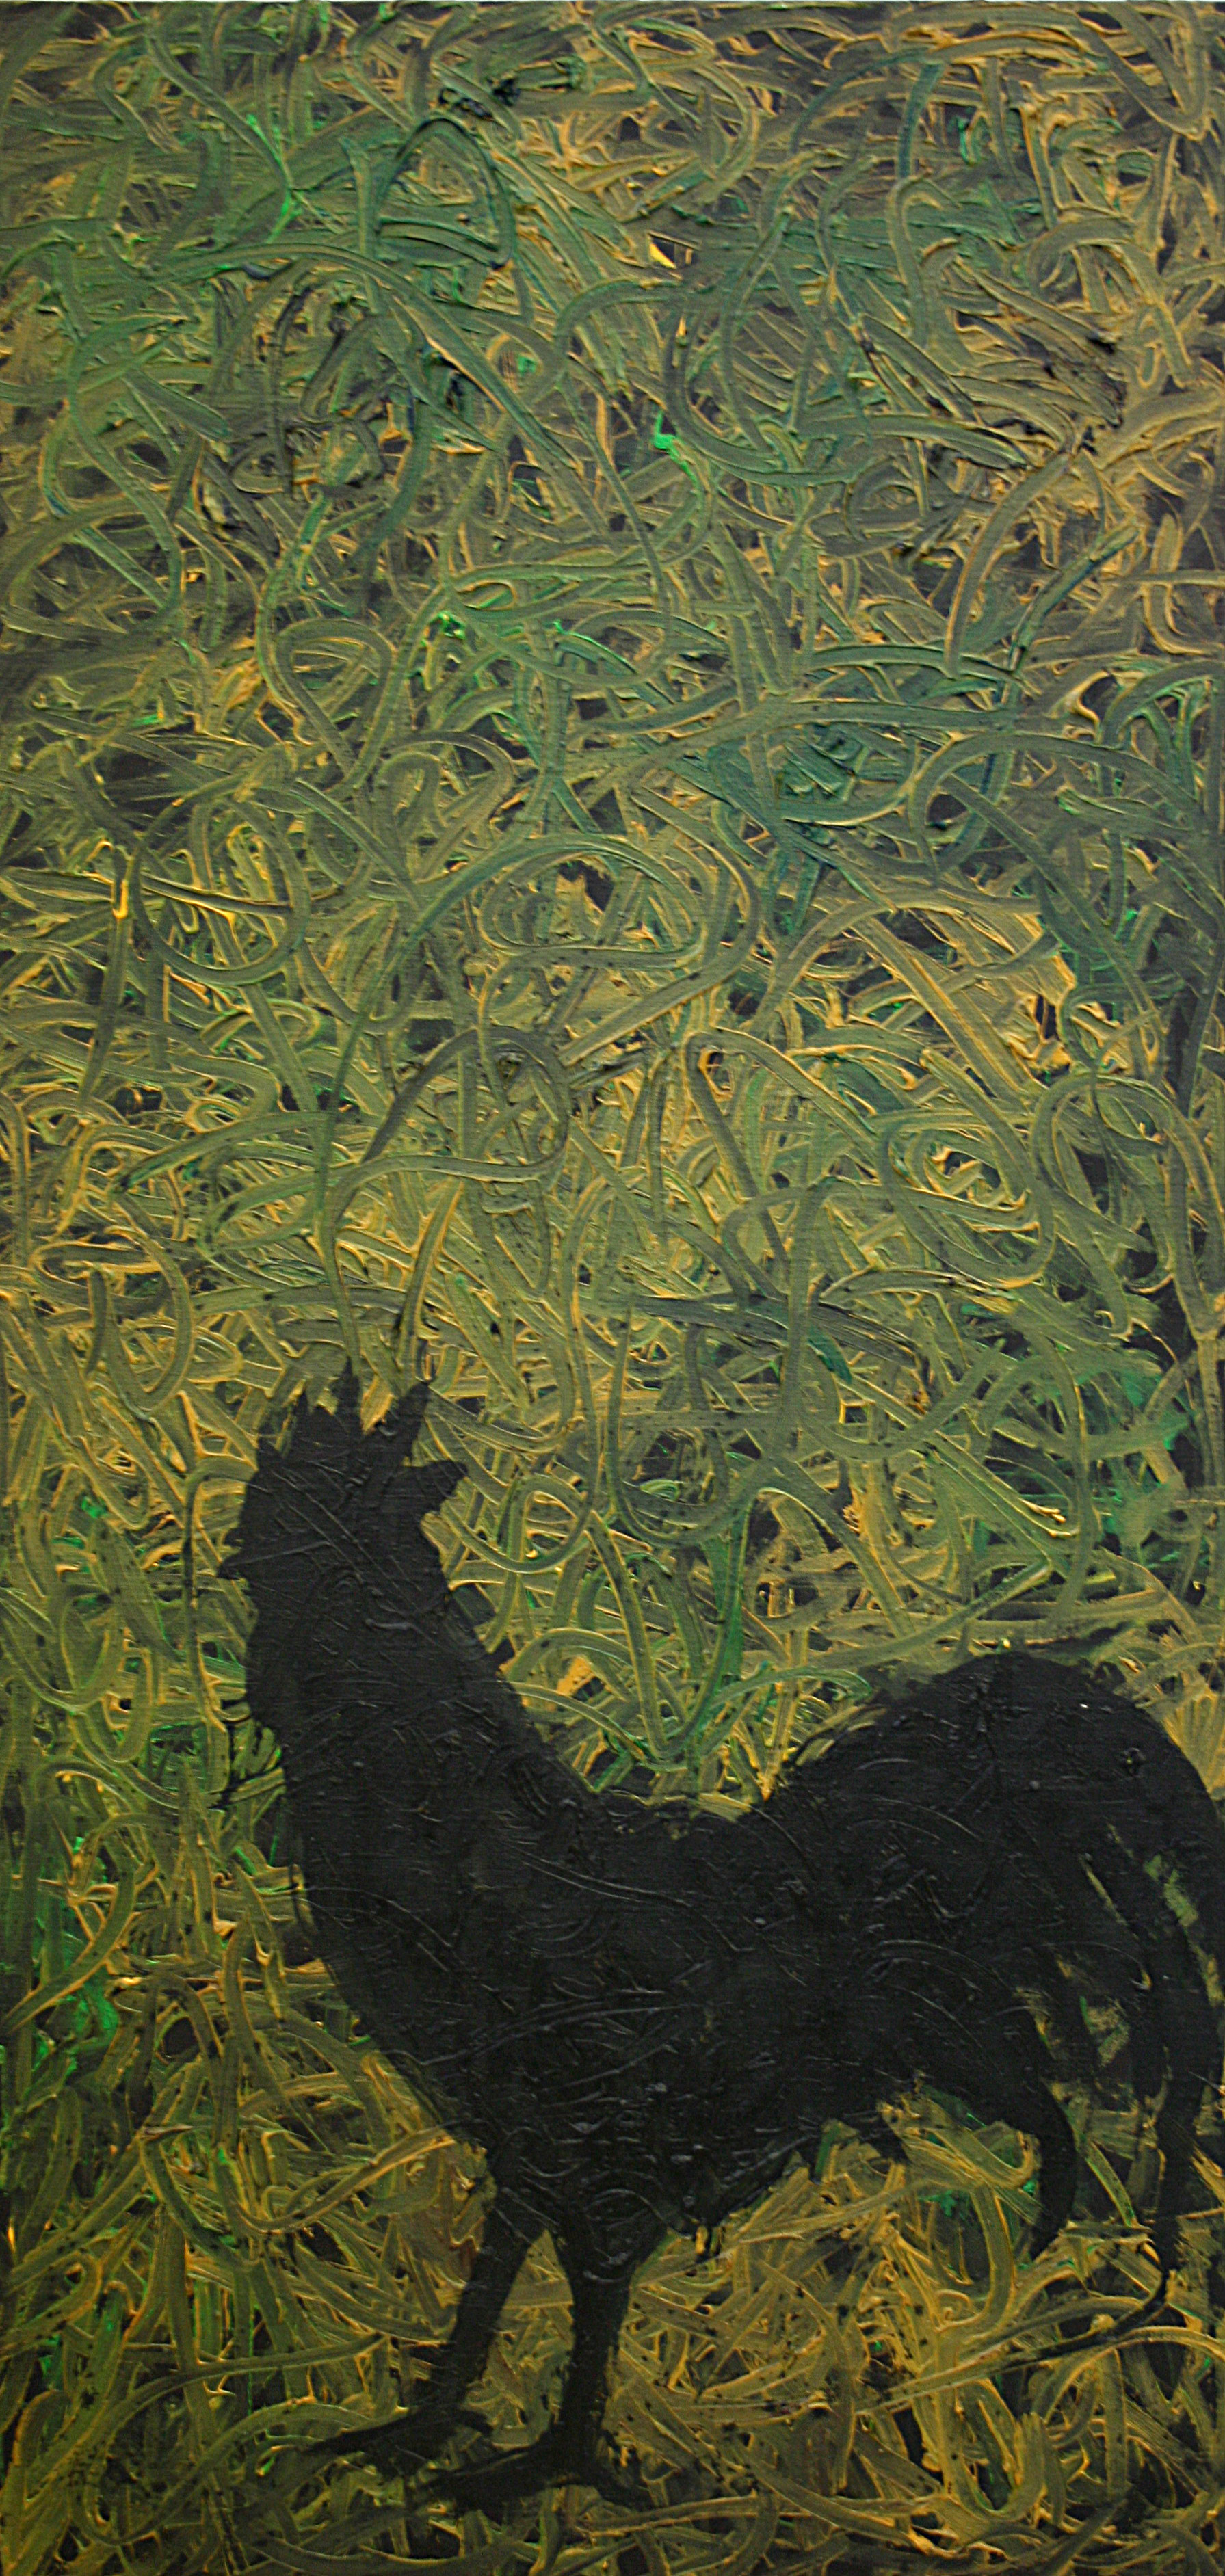 Raafed-Jarah 75, Untitle, oil on canvac, 123 X 59,5 cm. 2008,